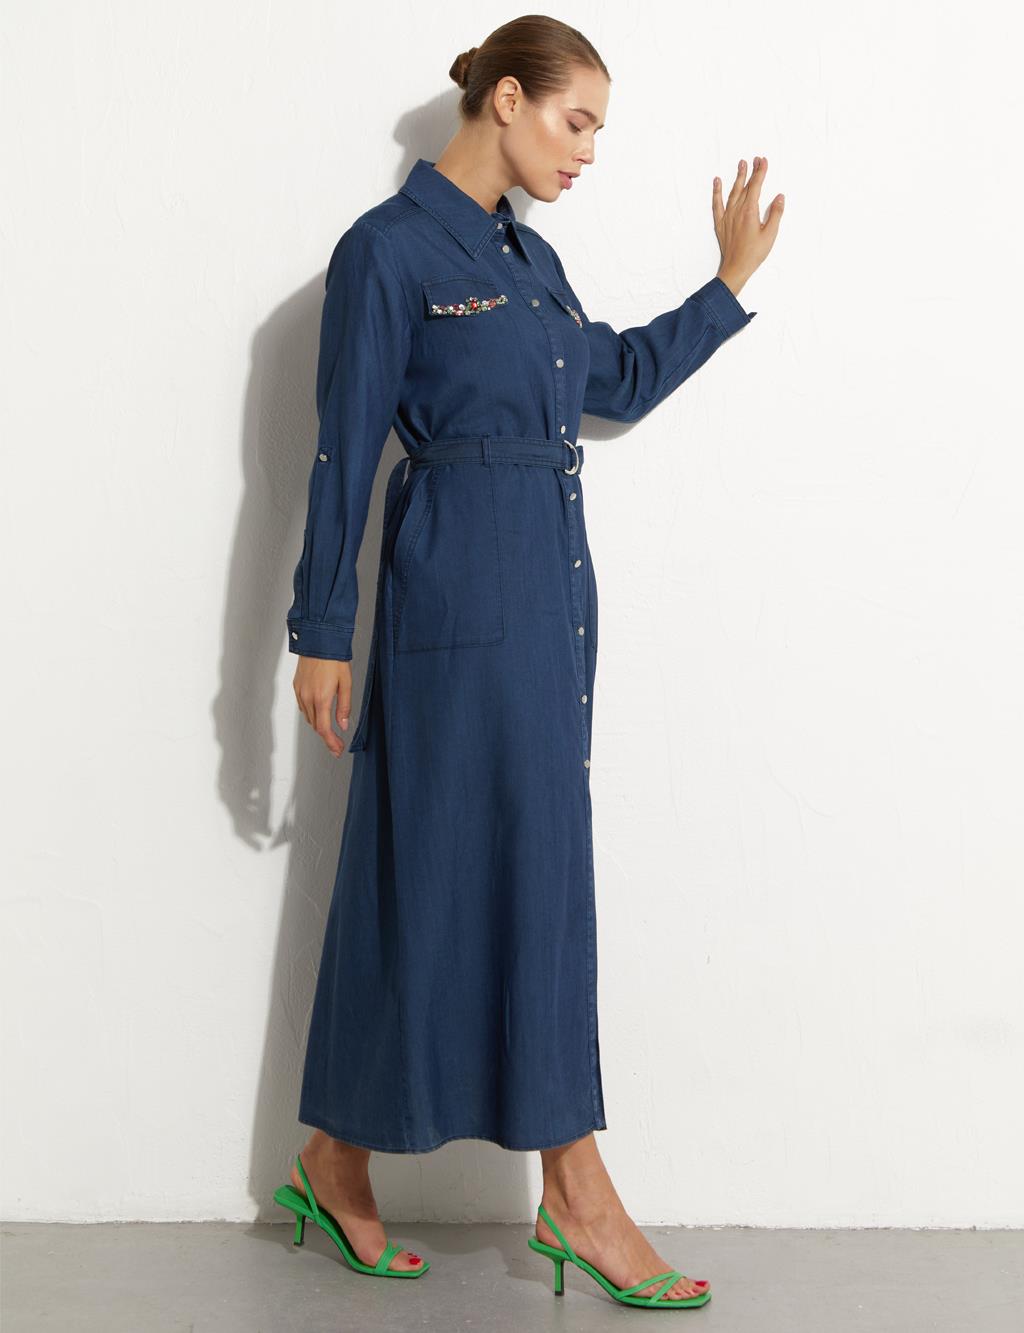 Adjustable Belt Detail Denim Dress Navy Blue